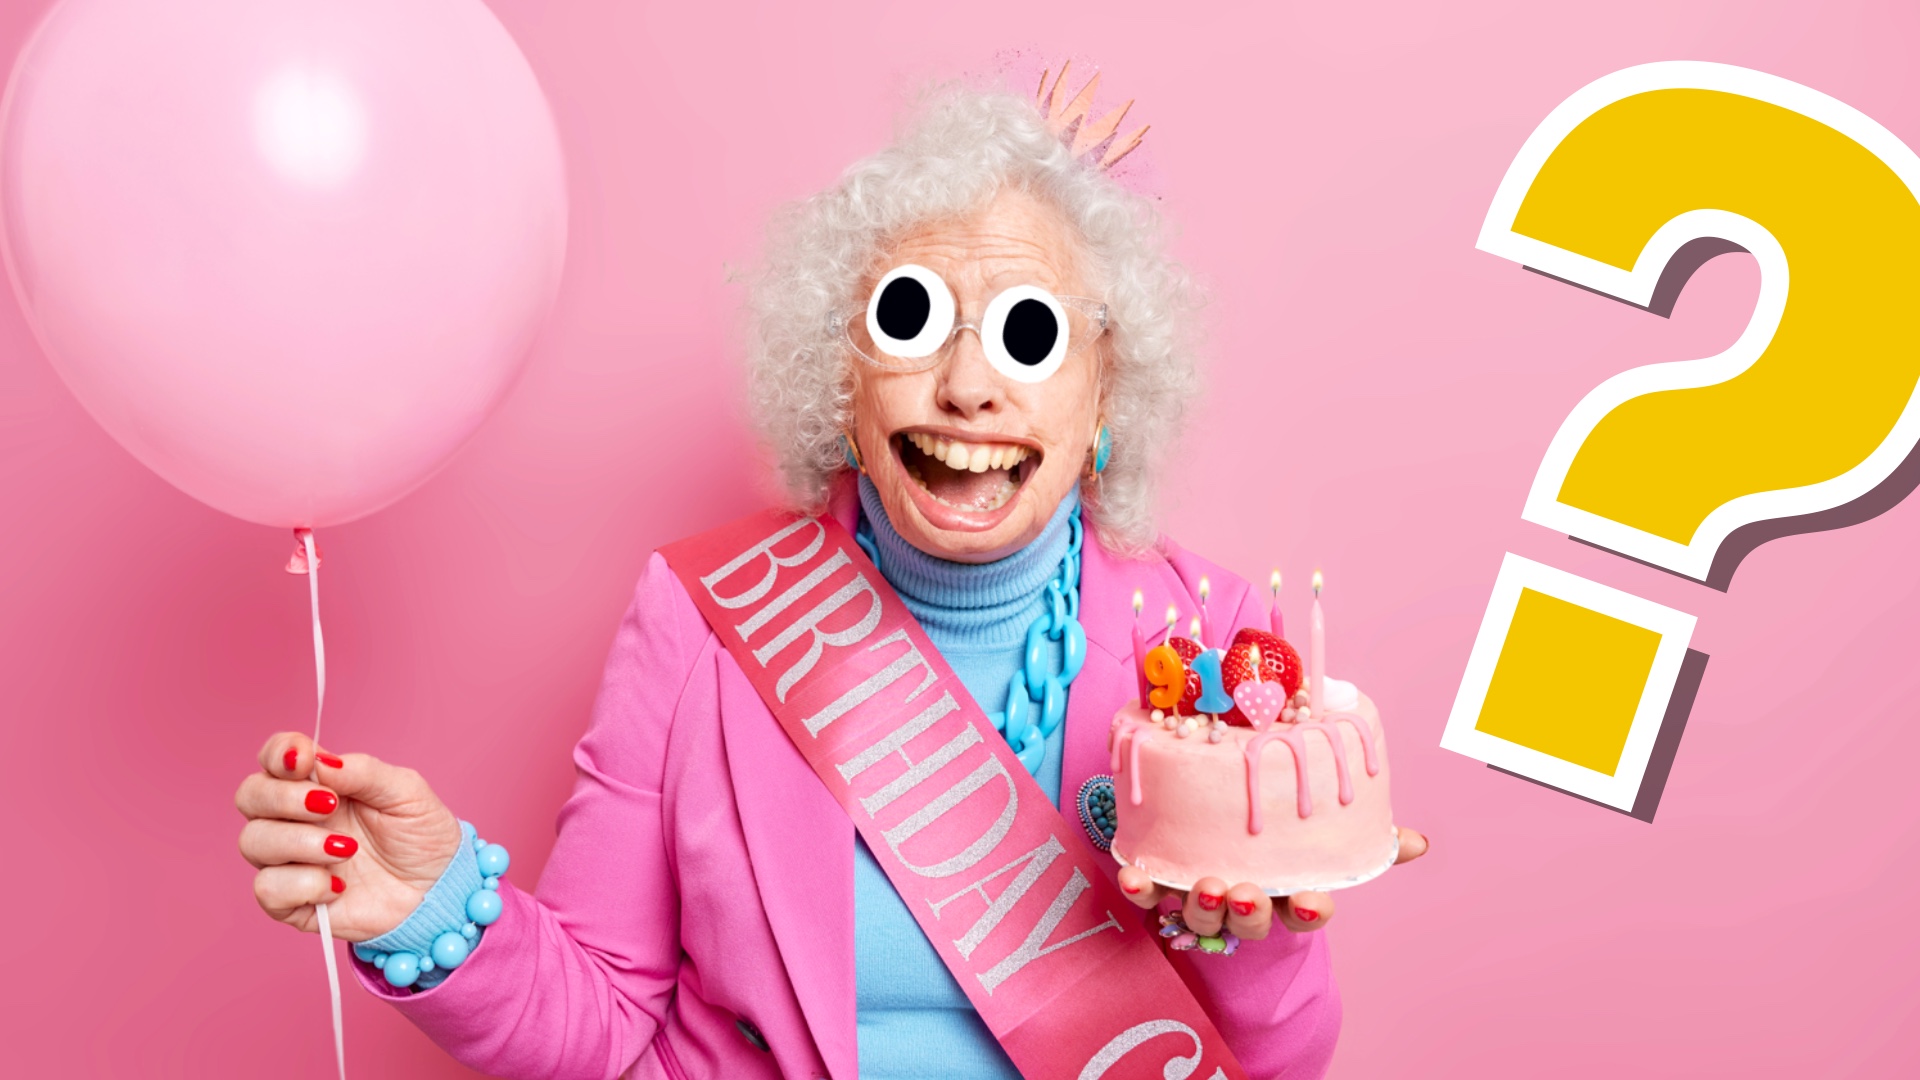 A grandma celebrating a birthday